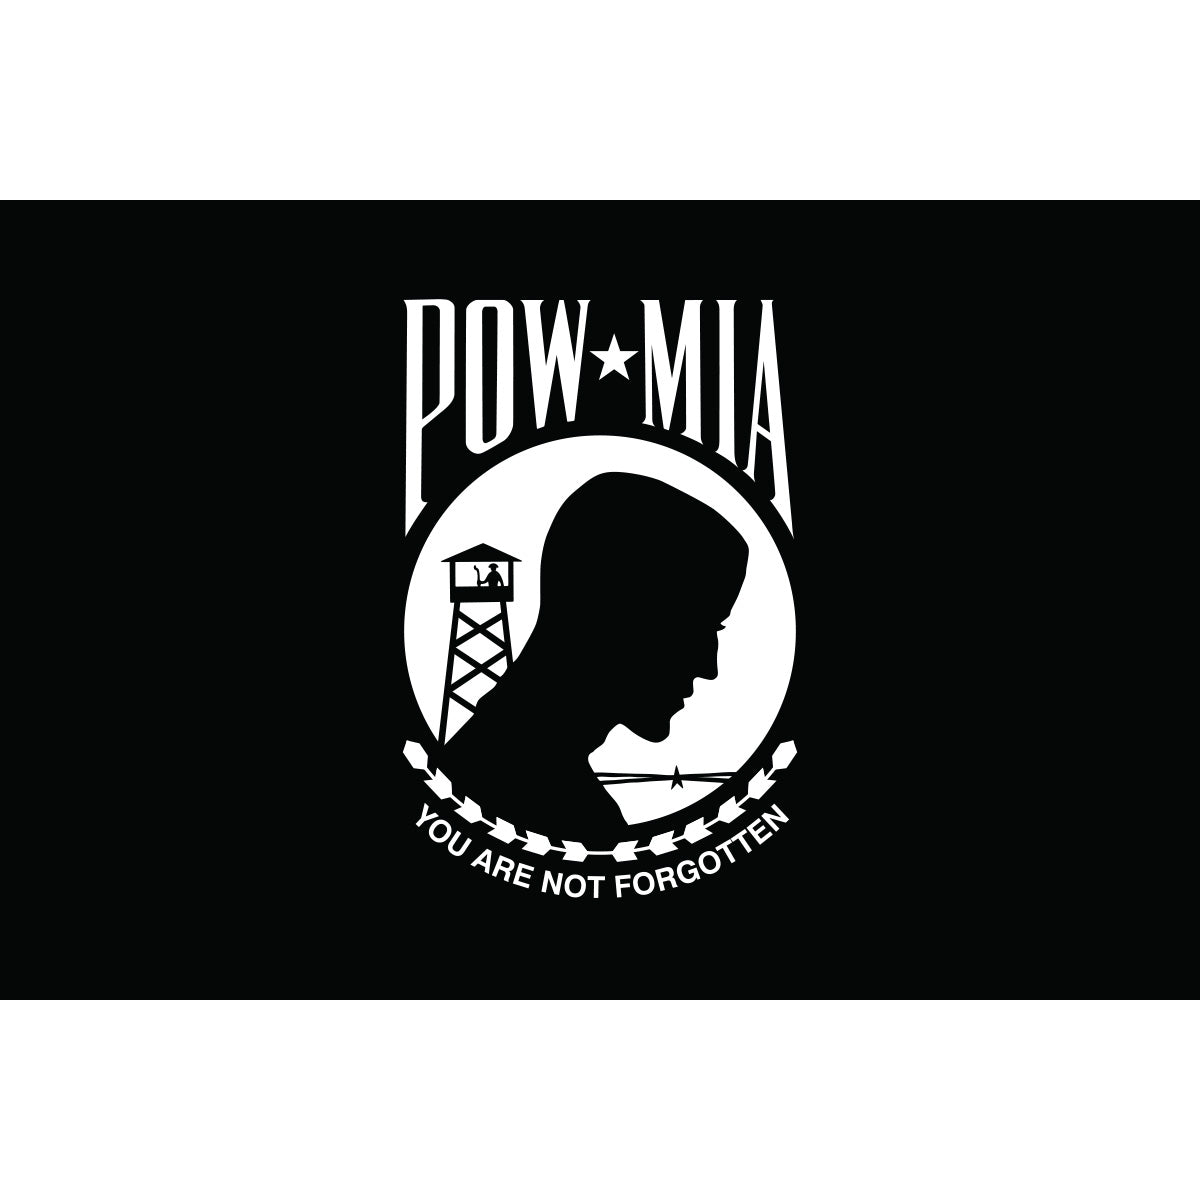 3'x5' Poly-Cotton Single Face POW-MIA Flag